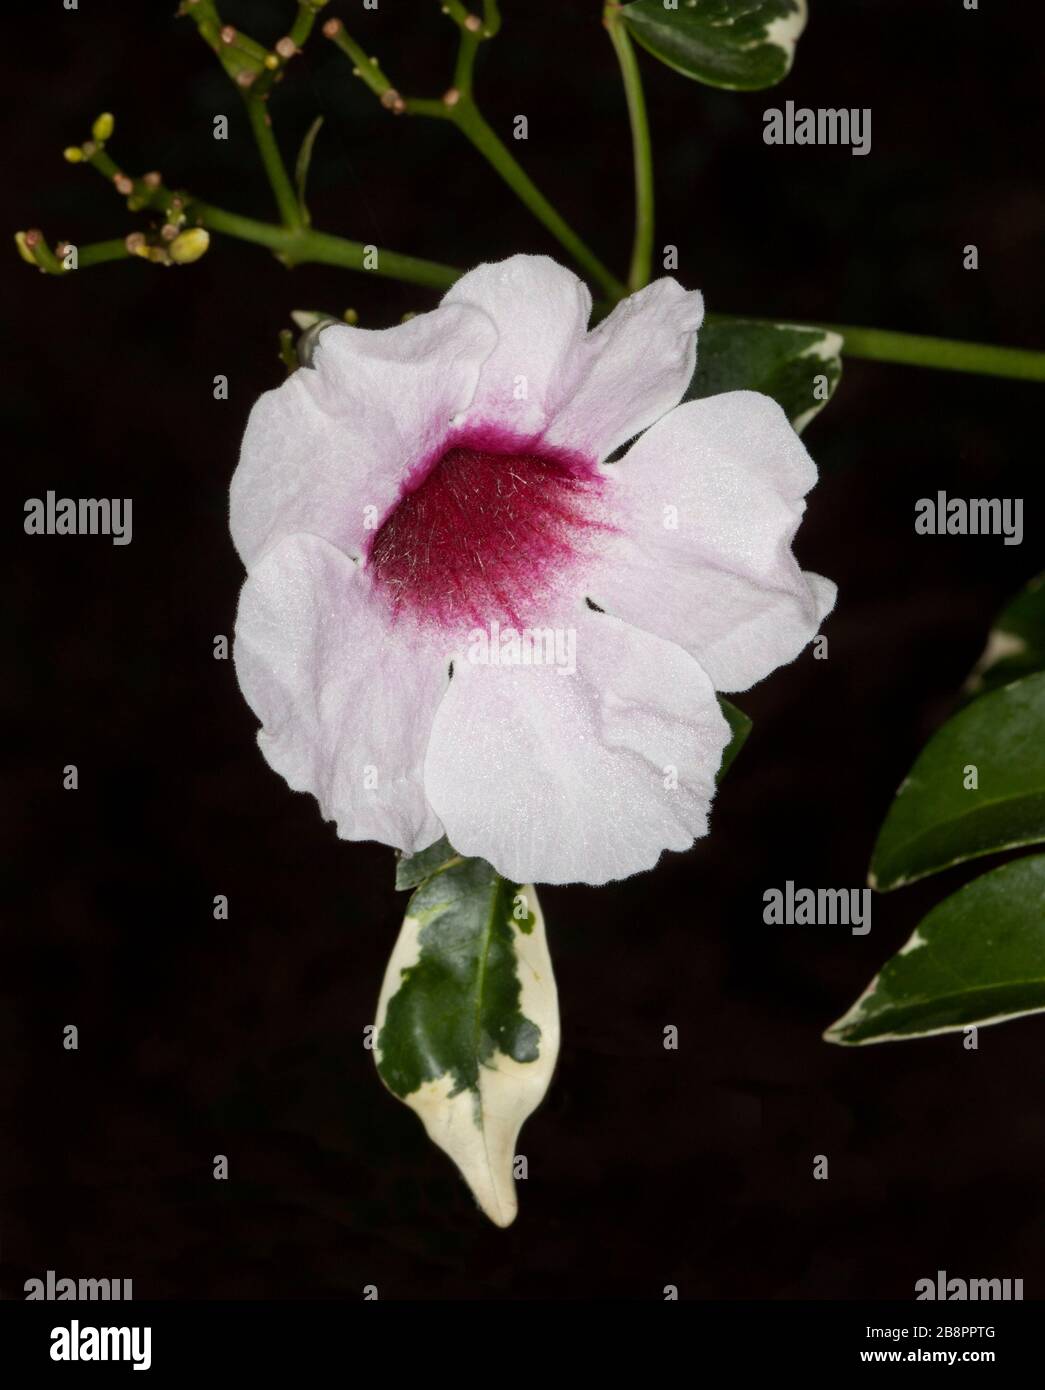 Belle fleur rose et blanche du grimpeur australien Pandorea jasminoides avec feuillage variégé, sur fond sombre Banque D'Images